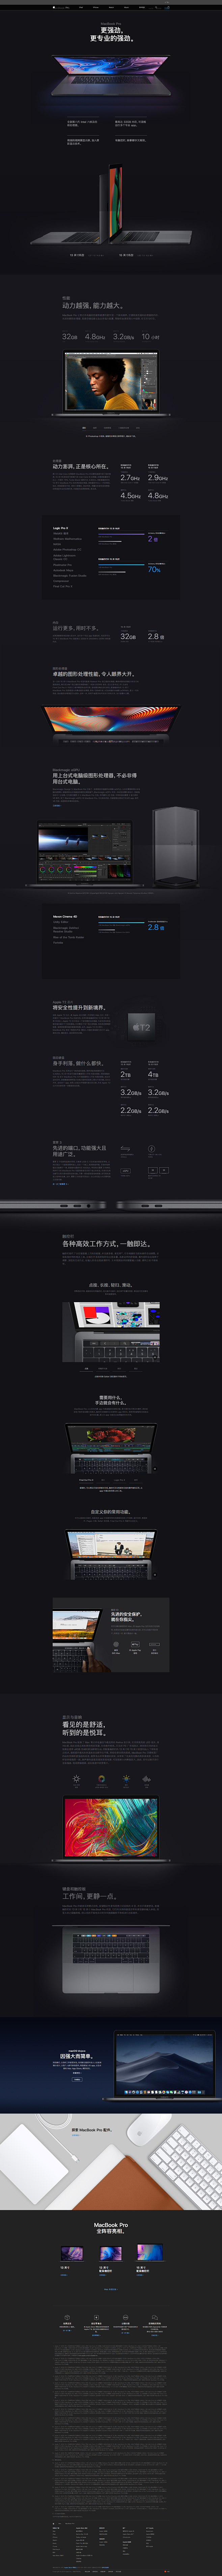 MacBook Pro - Apple ...